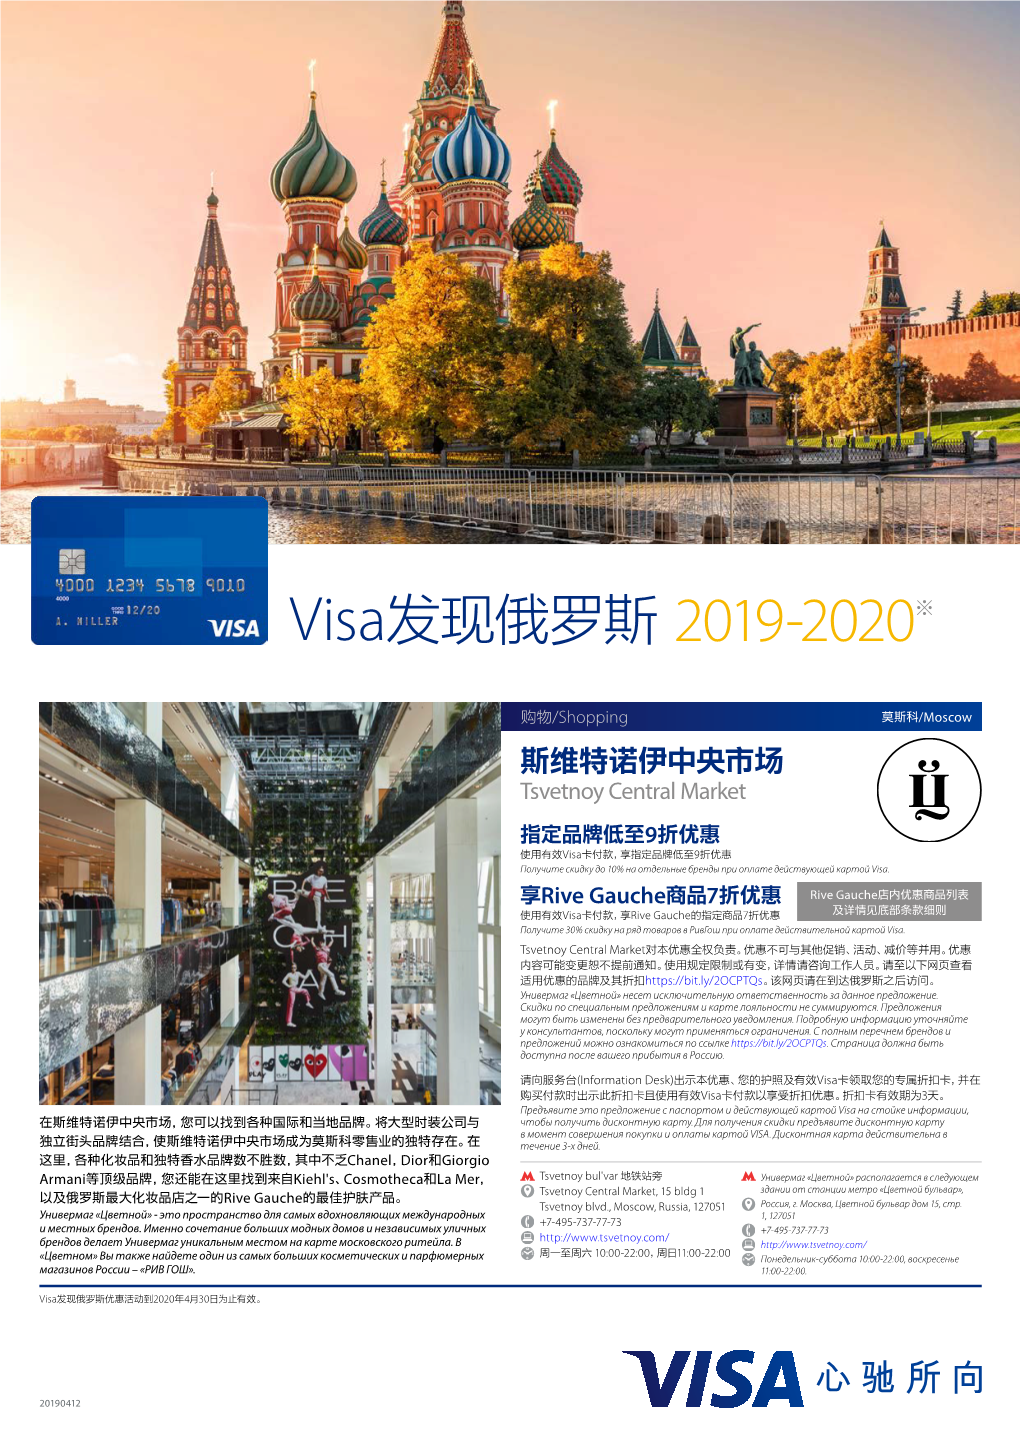 Visa发现俄罗斯2019-2020※